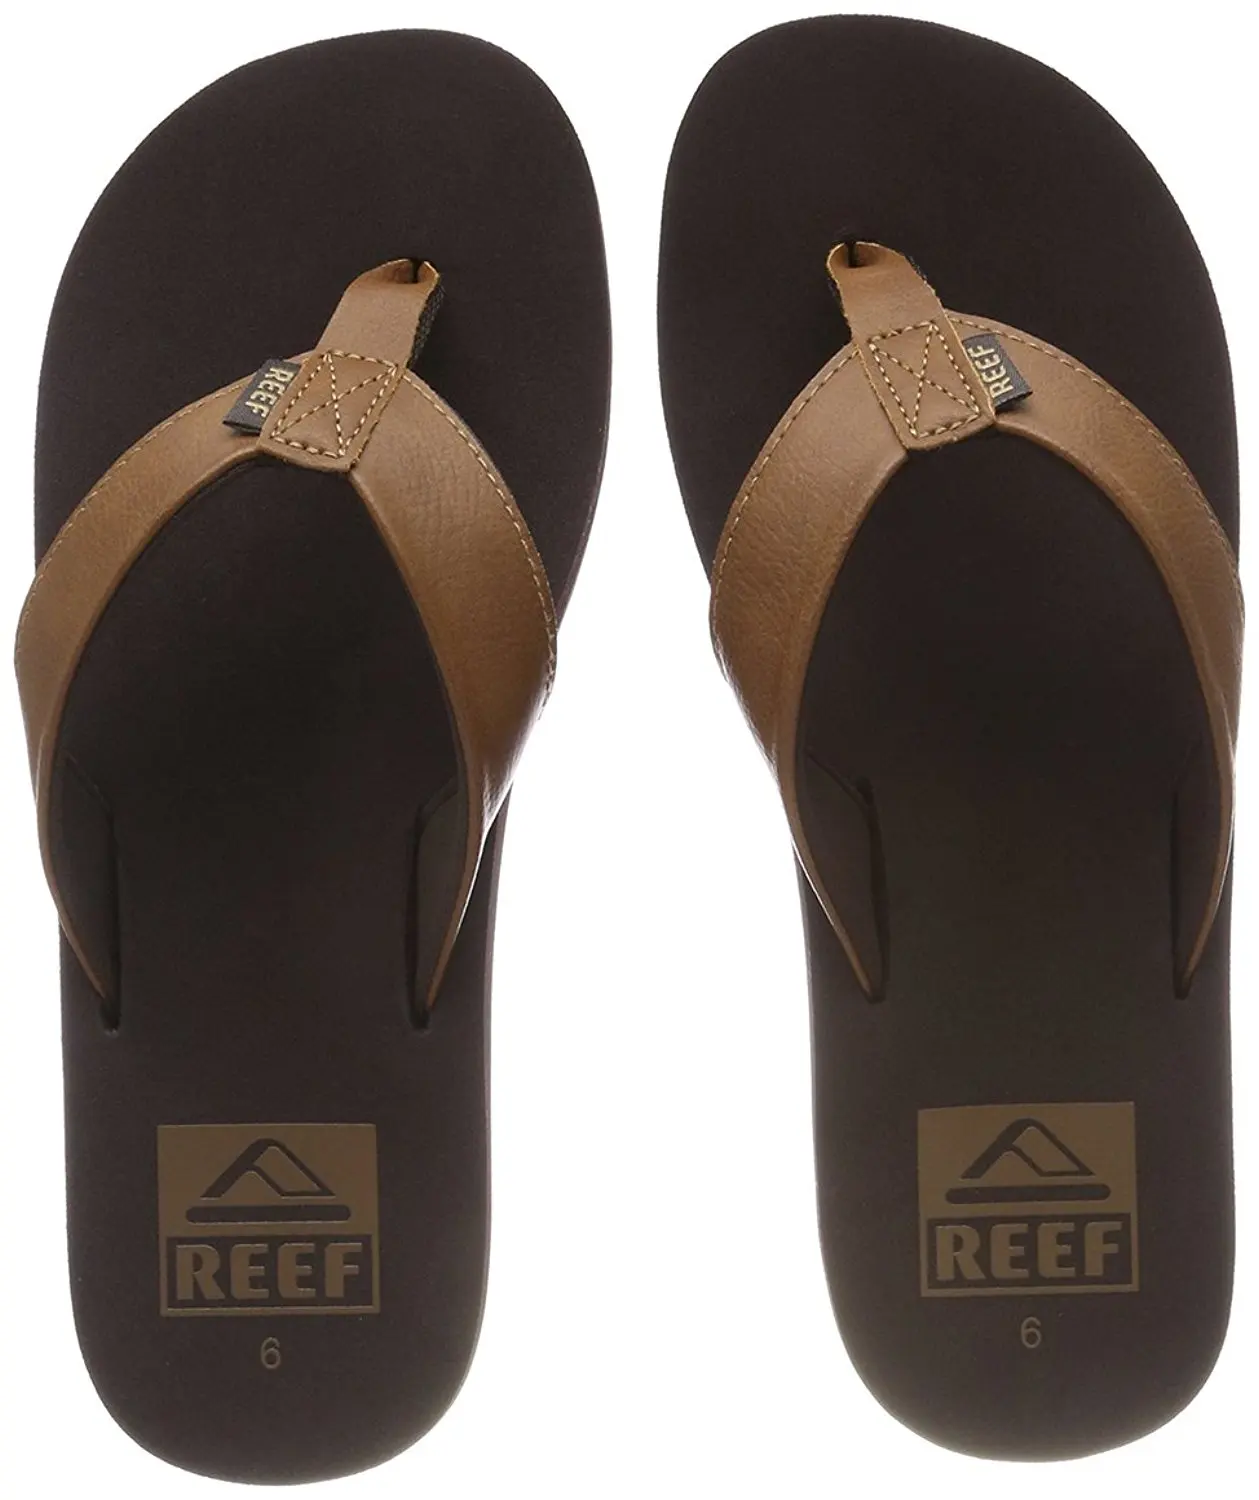 buy reef thongs